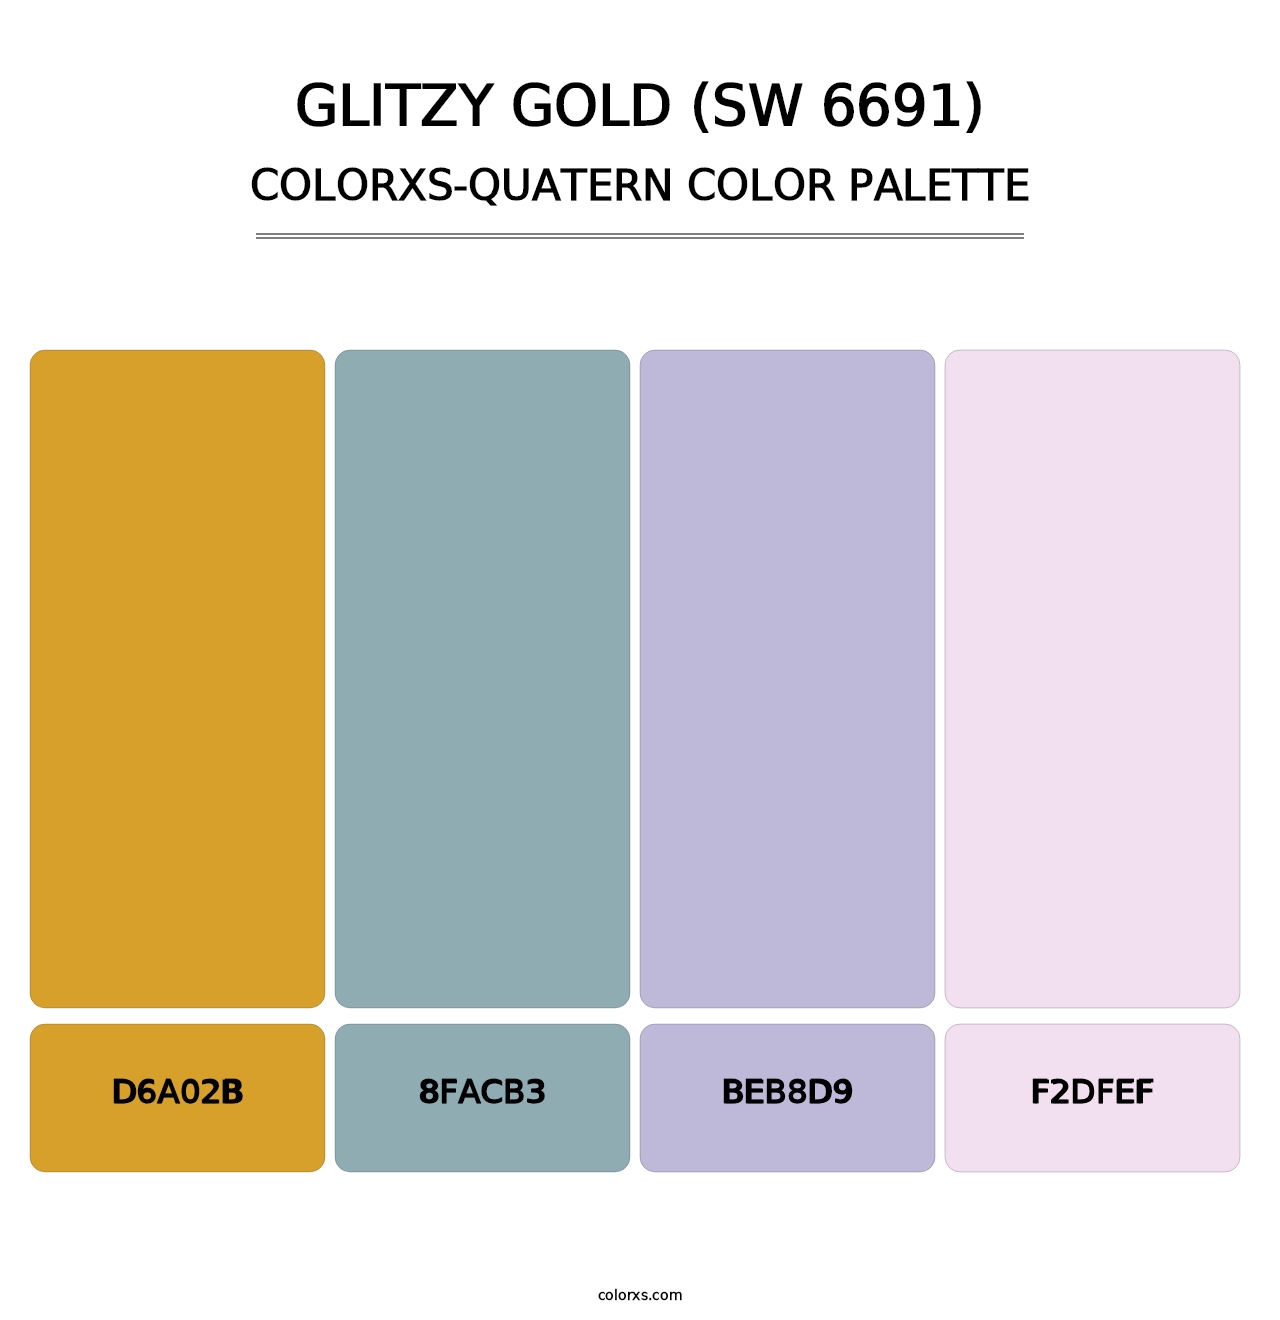 Glitzy Gold (SW 6691) - Colorxs Quatern Palette